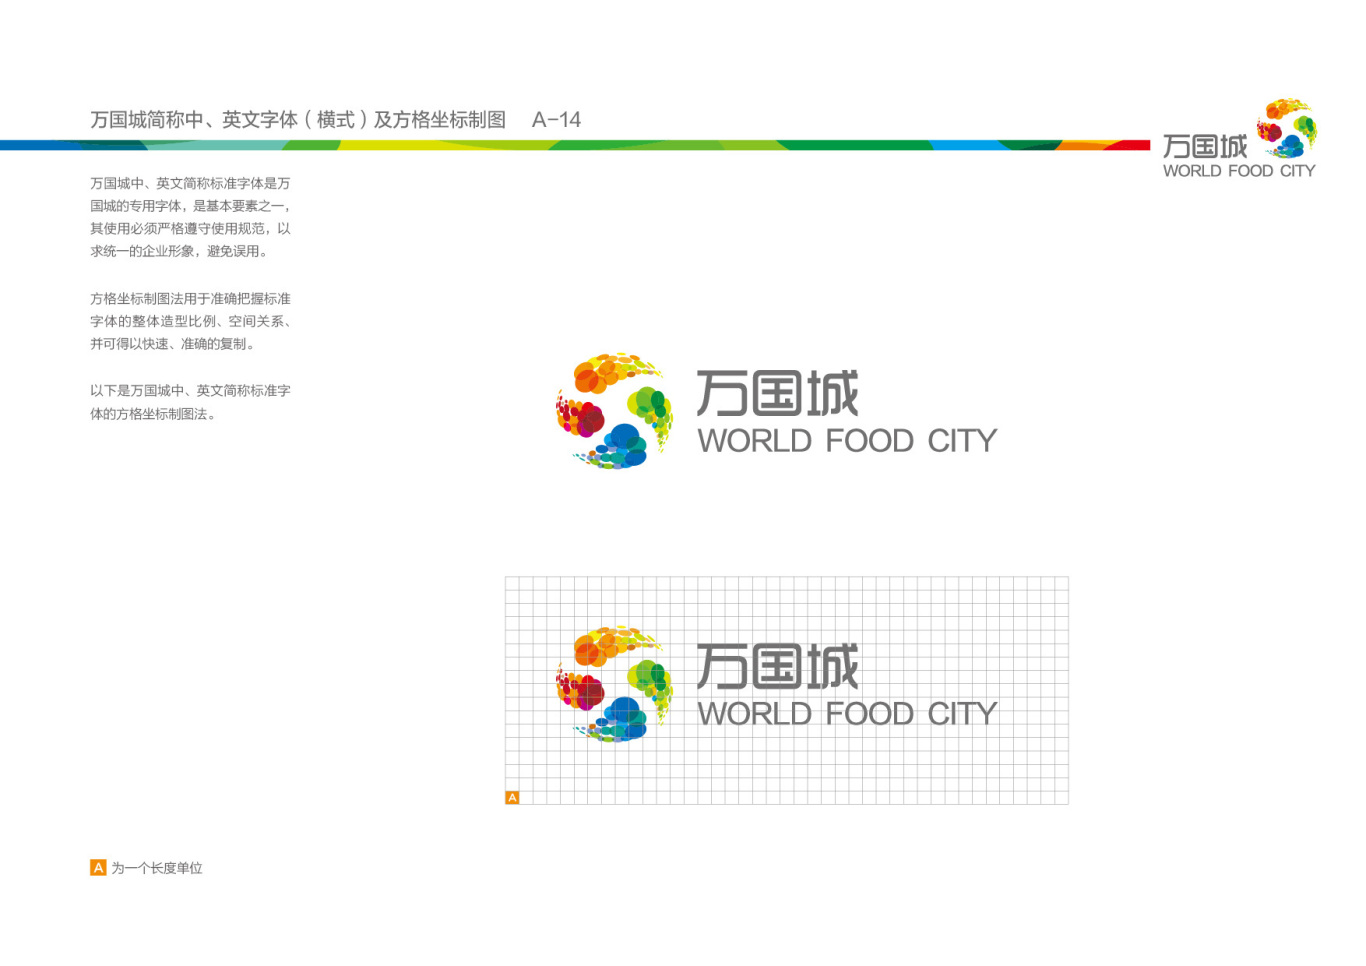 一套万国食品城VI设计图4